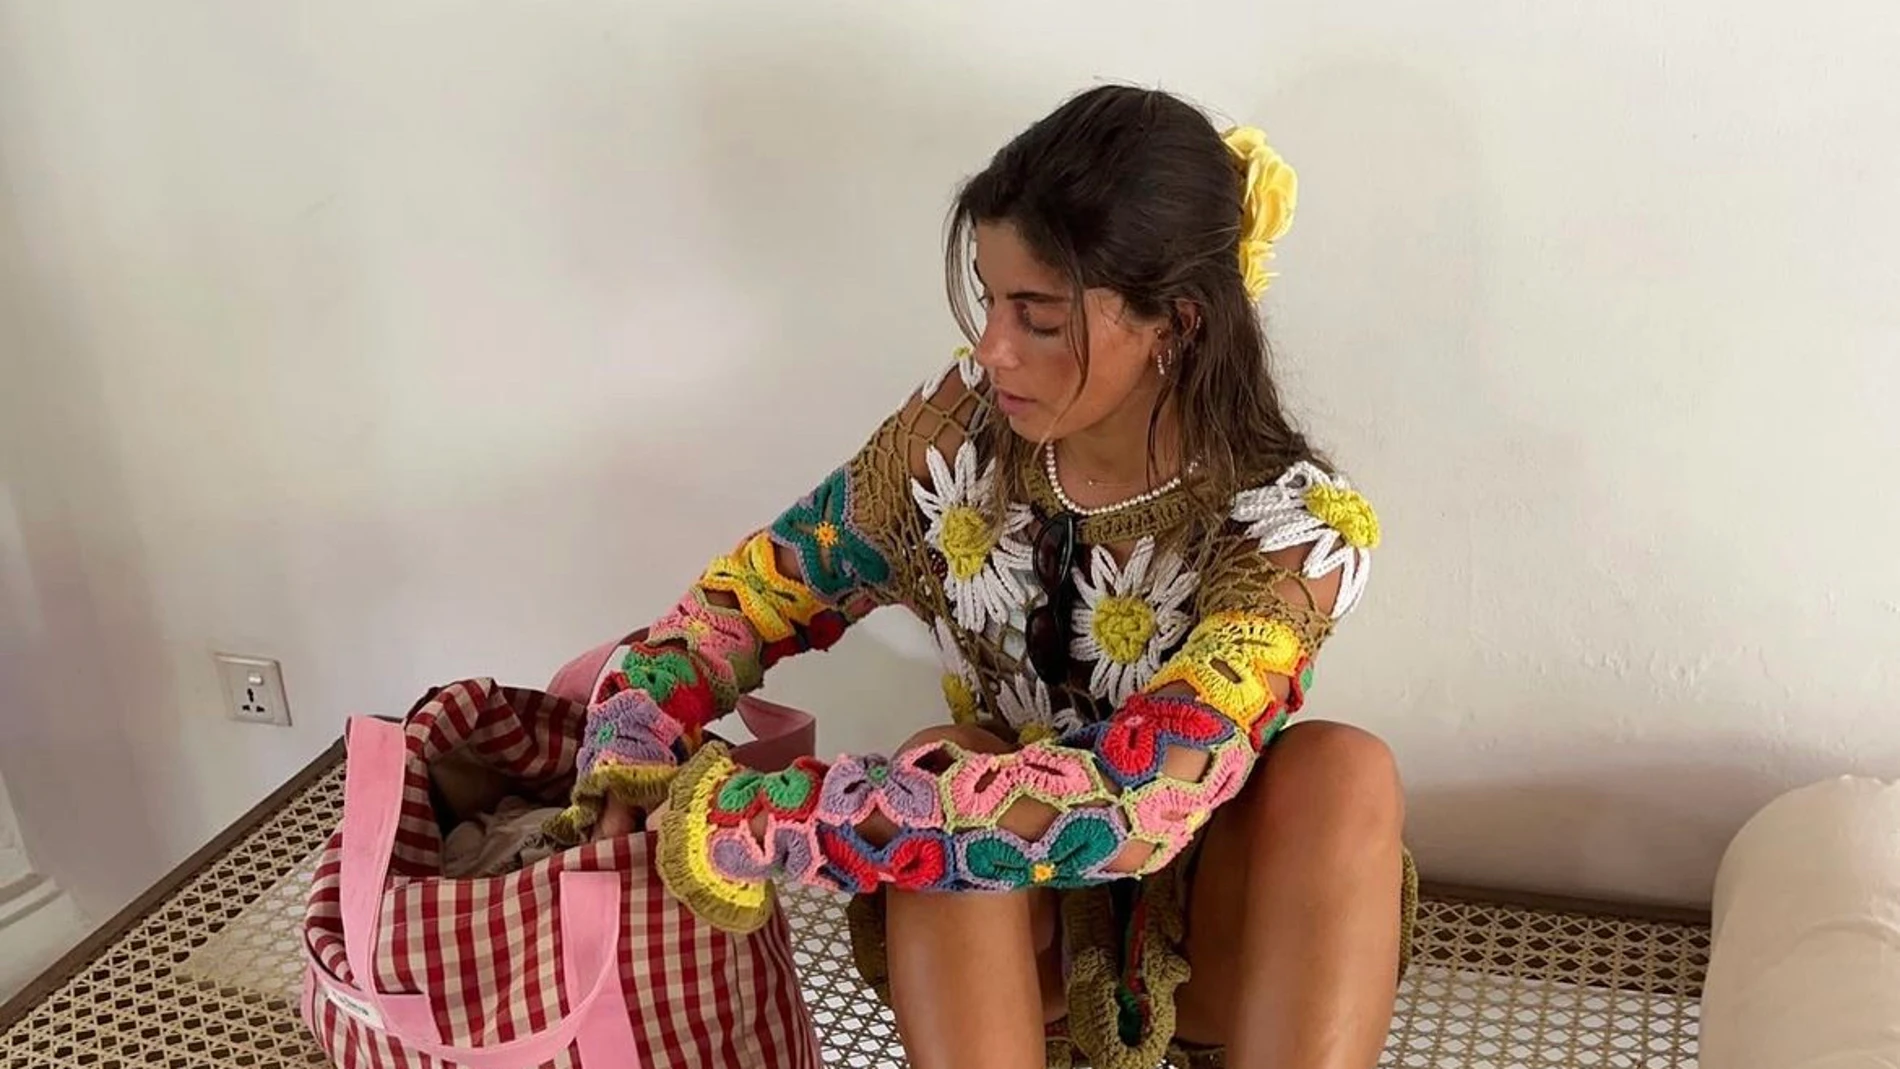 El top de crochet de Sara Baceiredo es perfecto para el verano